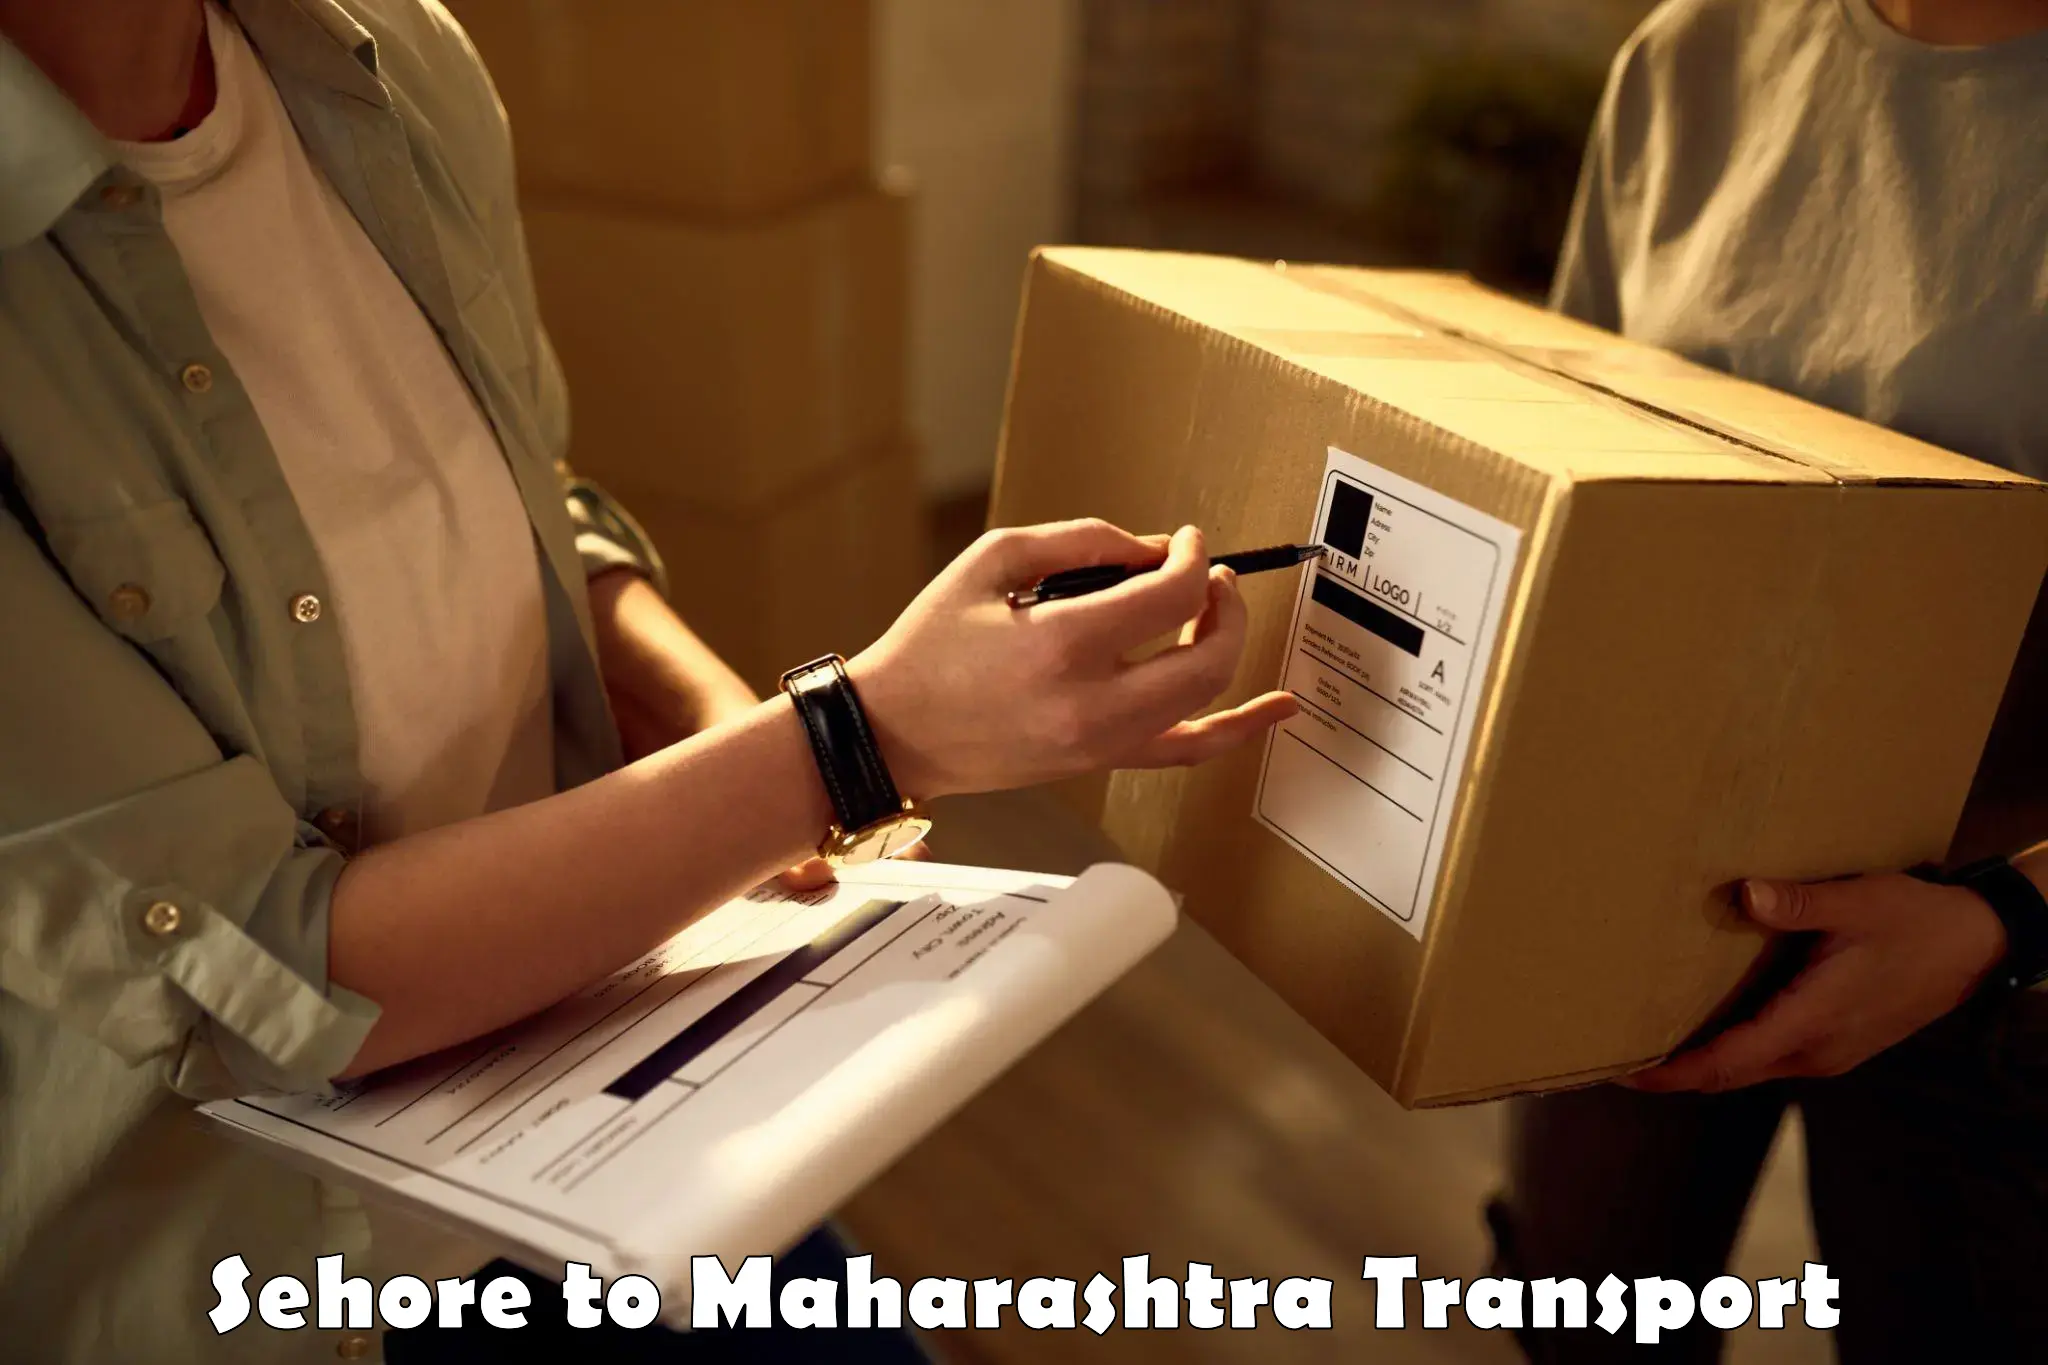 Delivery service Sehore to Raigarh Maharashtra